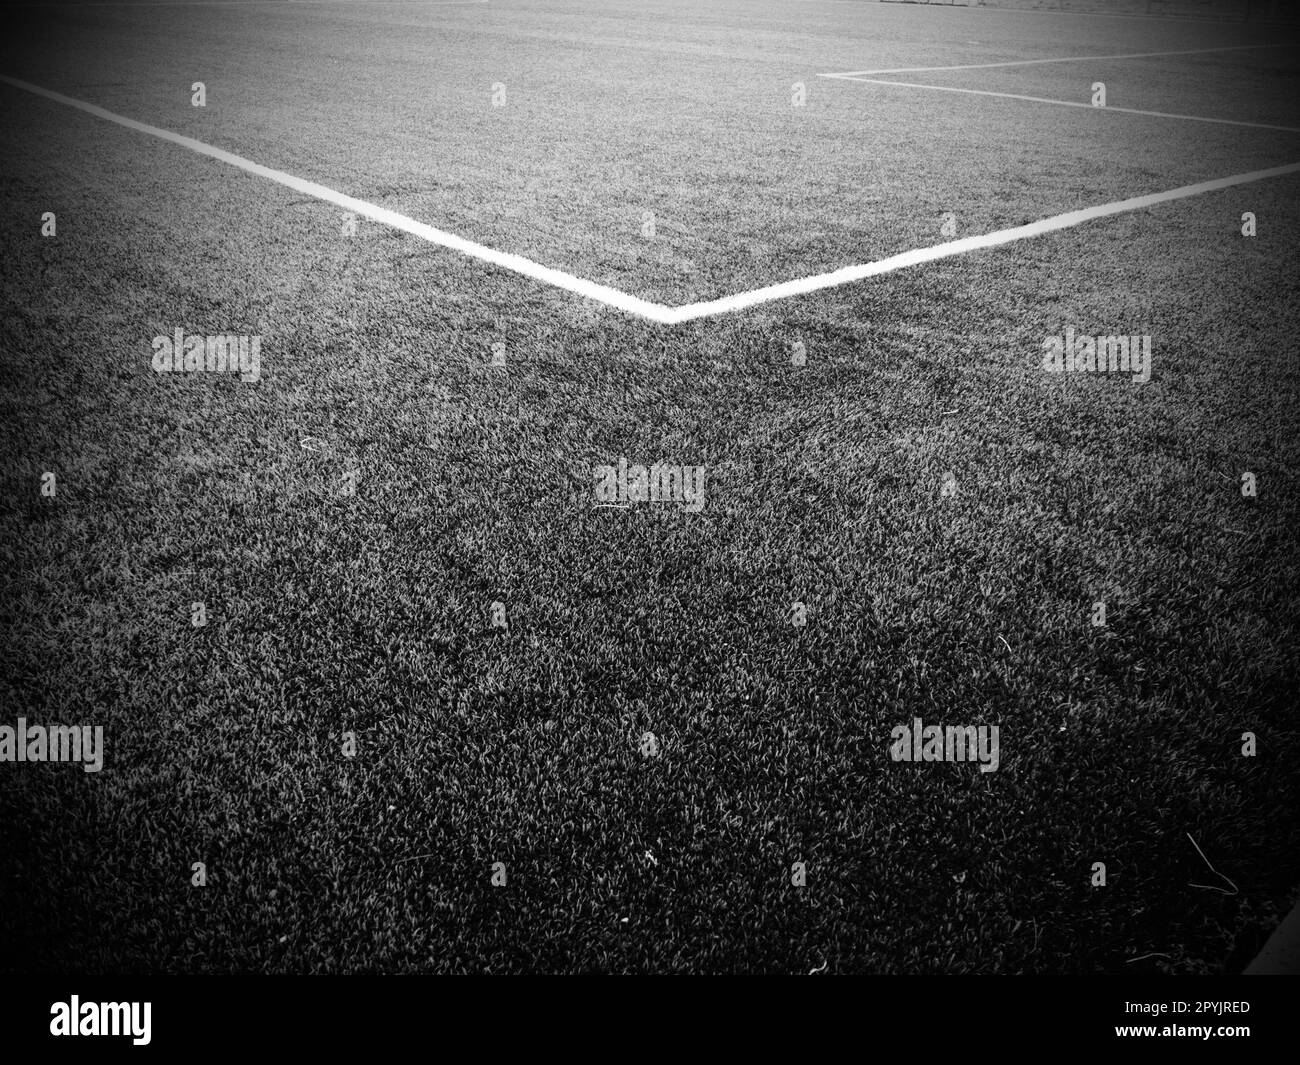 Die Markierung des Fußballfeldes. Weiße Linien mit einer Breite von maximal 12 cm oder 5 Zoll. Fußballfeld. Schwarzweiß-Schwarzweiß-Fotografie Stockfoto